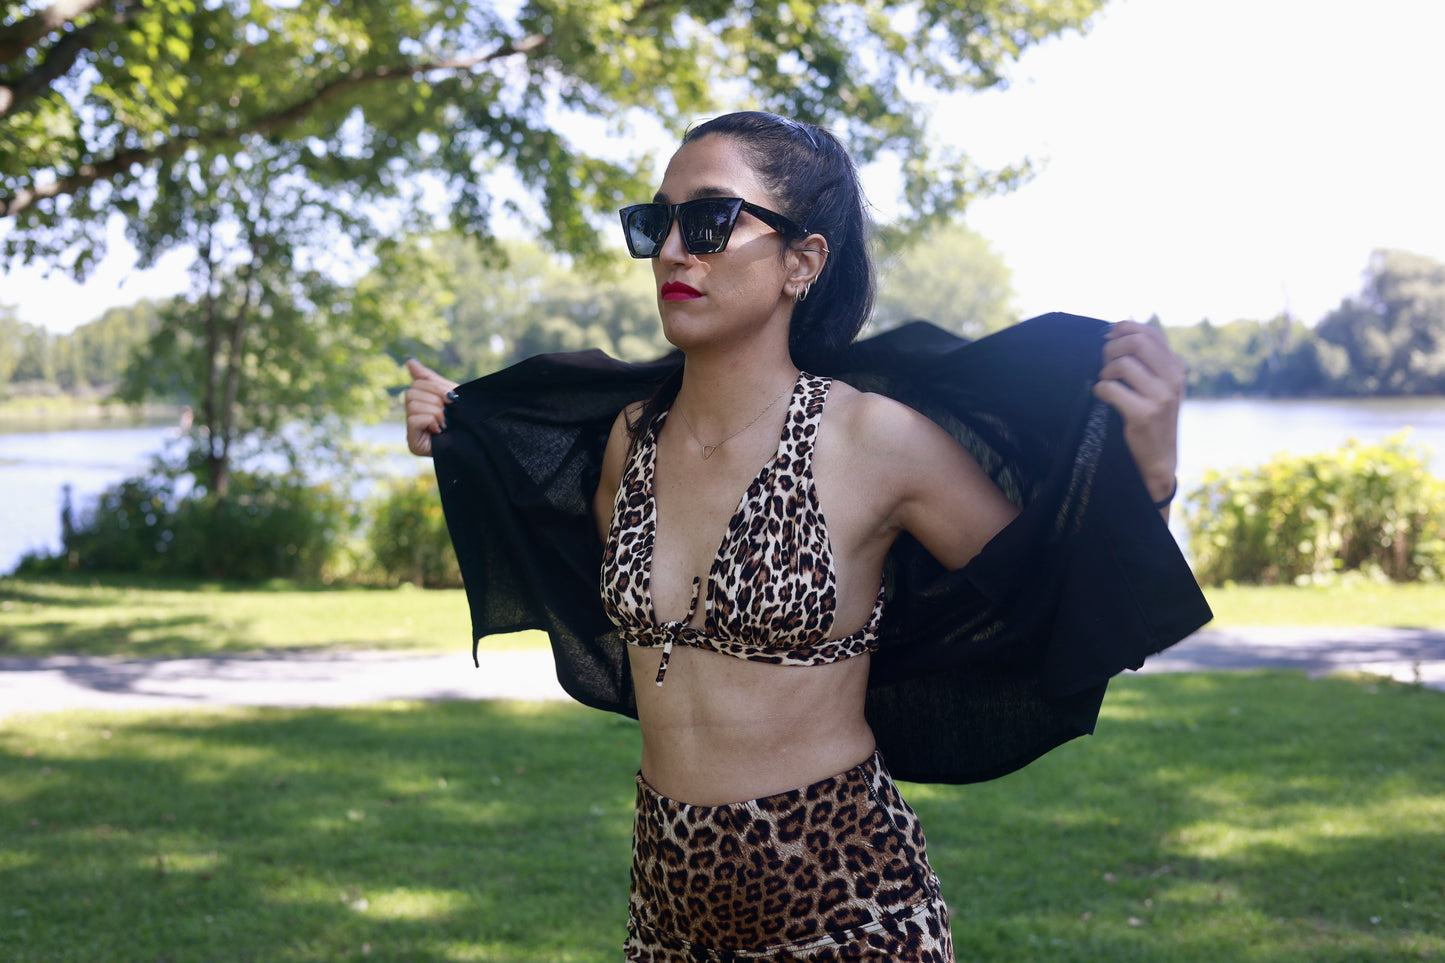 Bikini in Leopard pattern